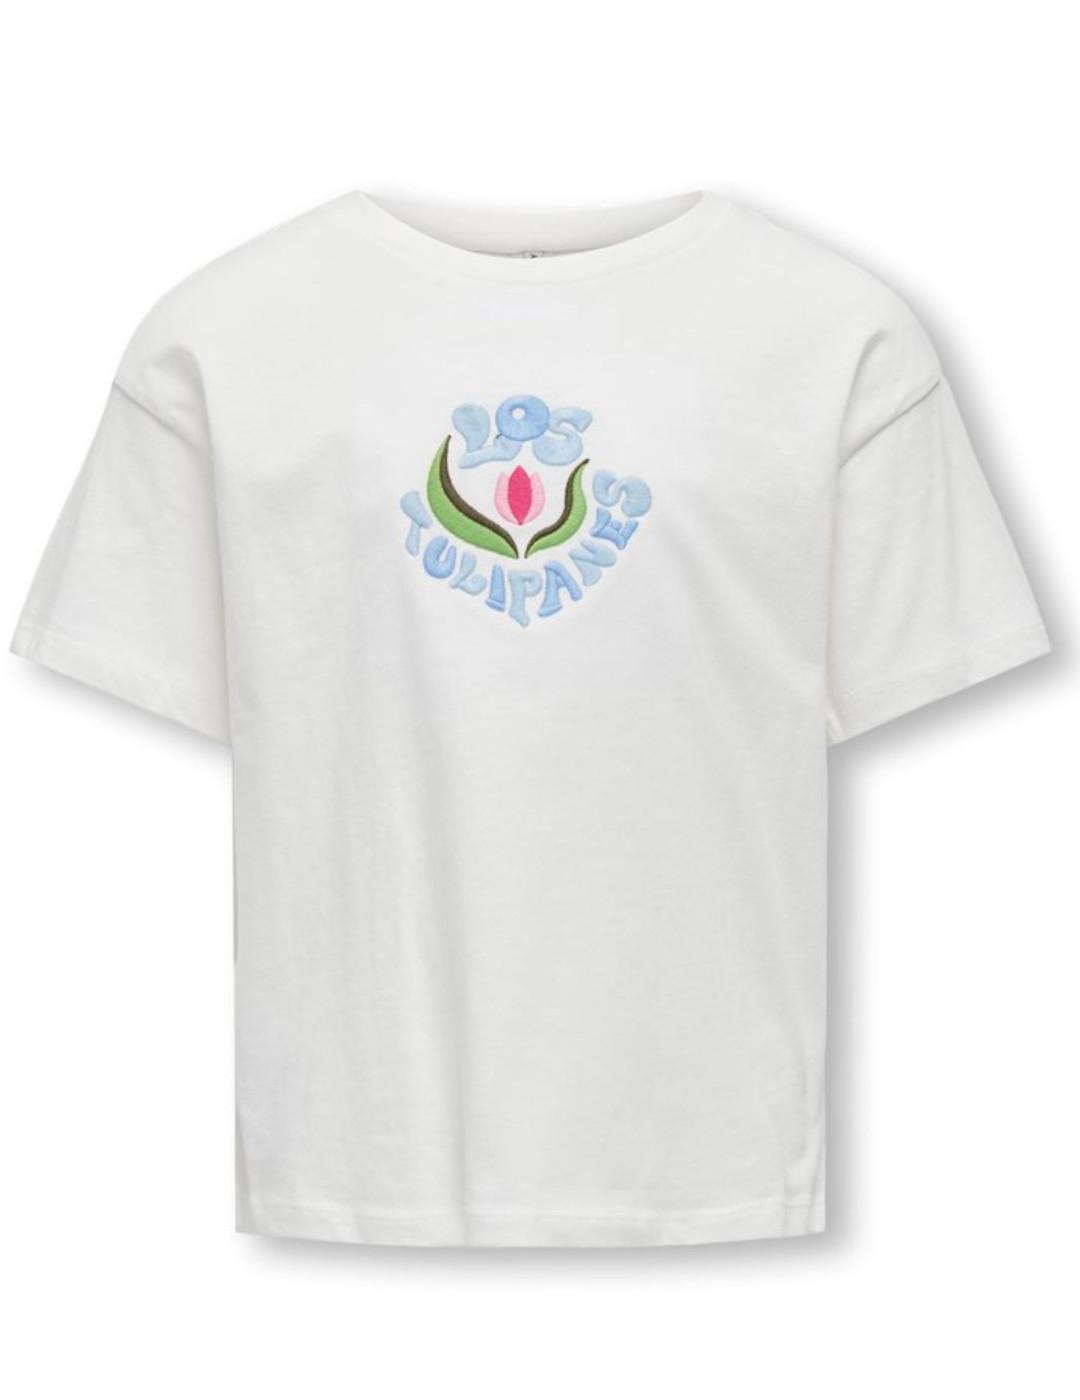 Camiseta Only Kids Flower blanca manga corta para niña